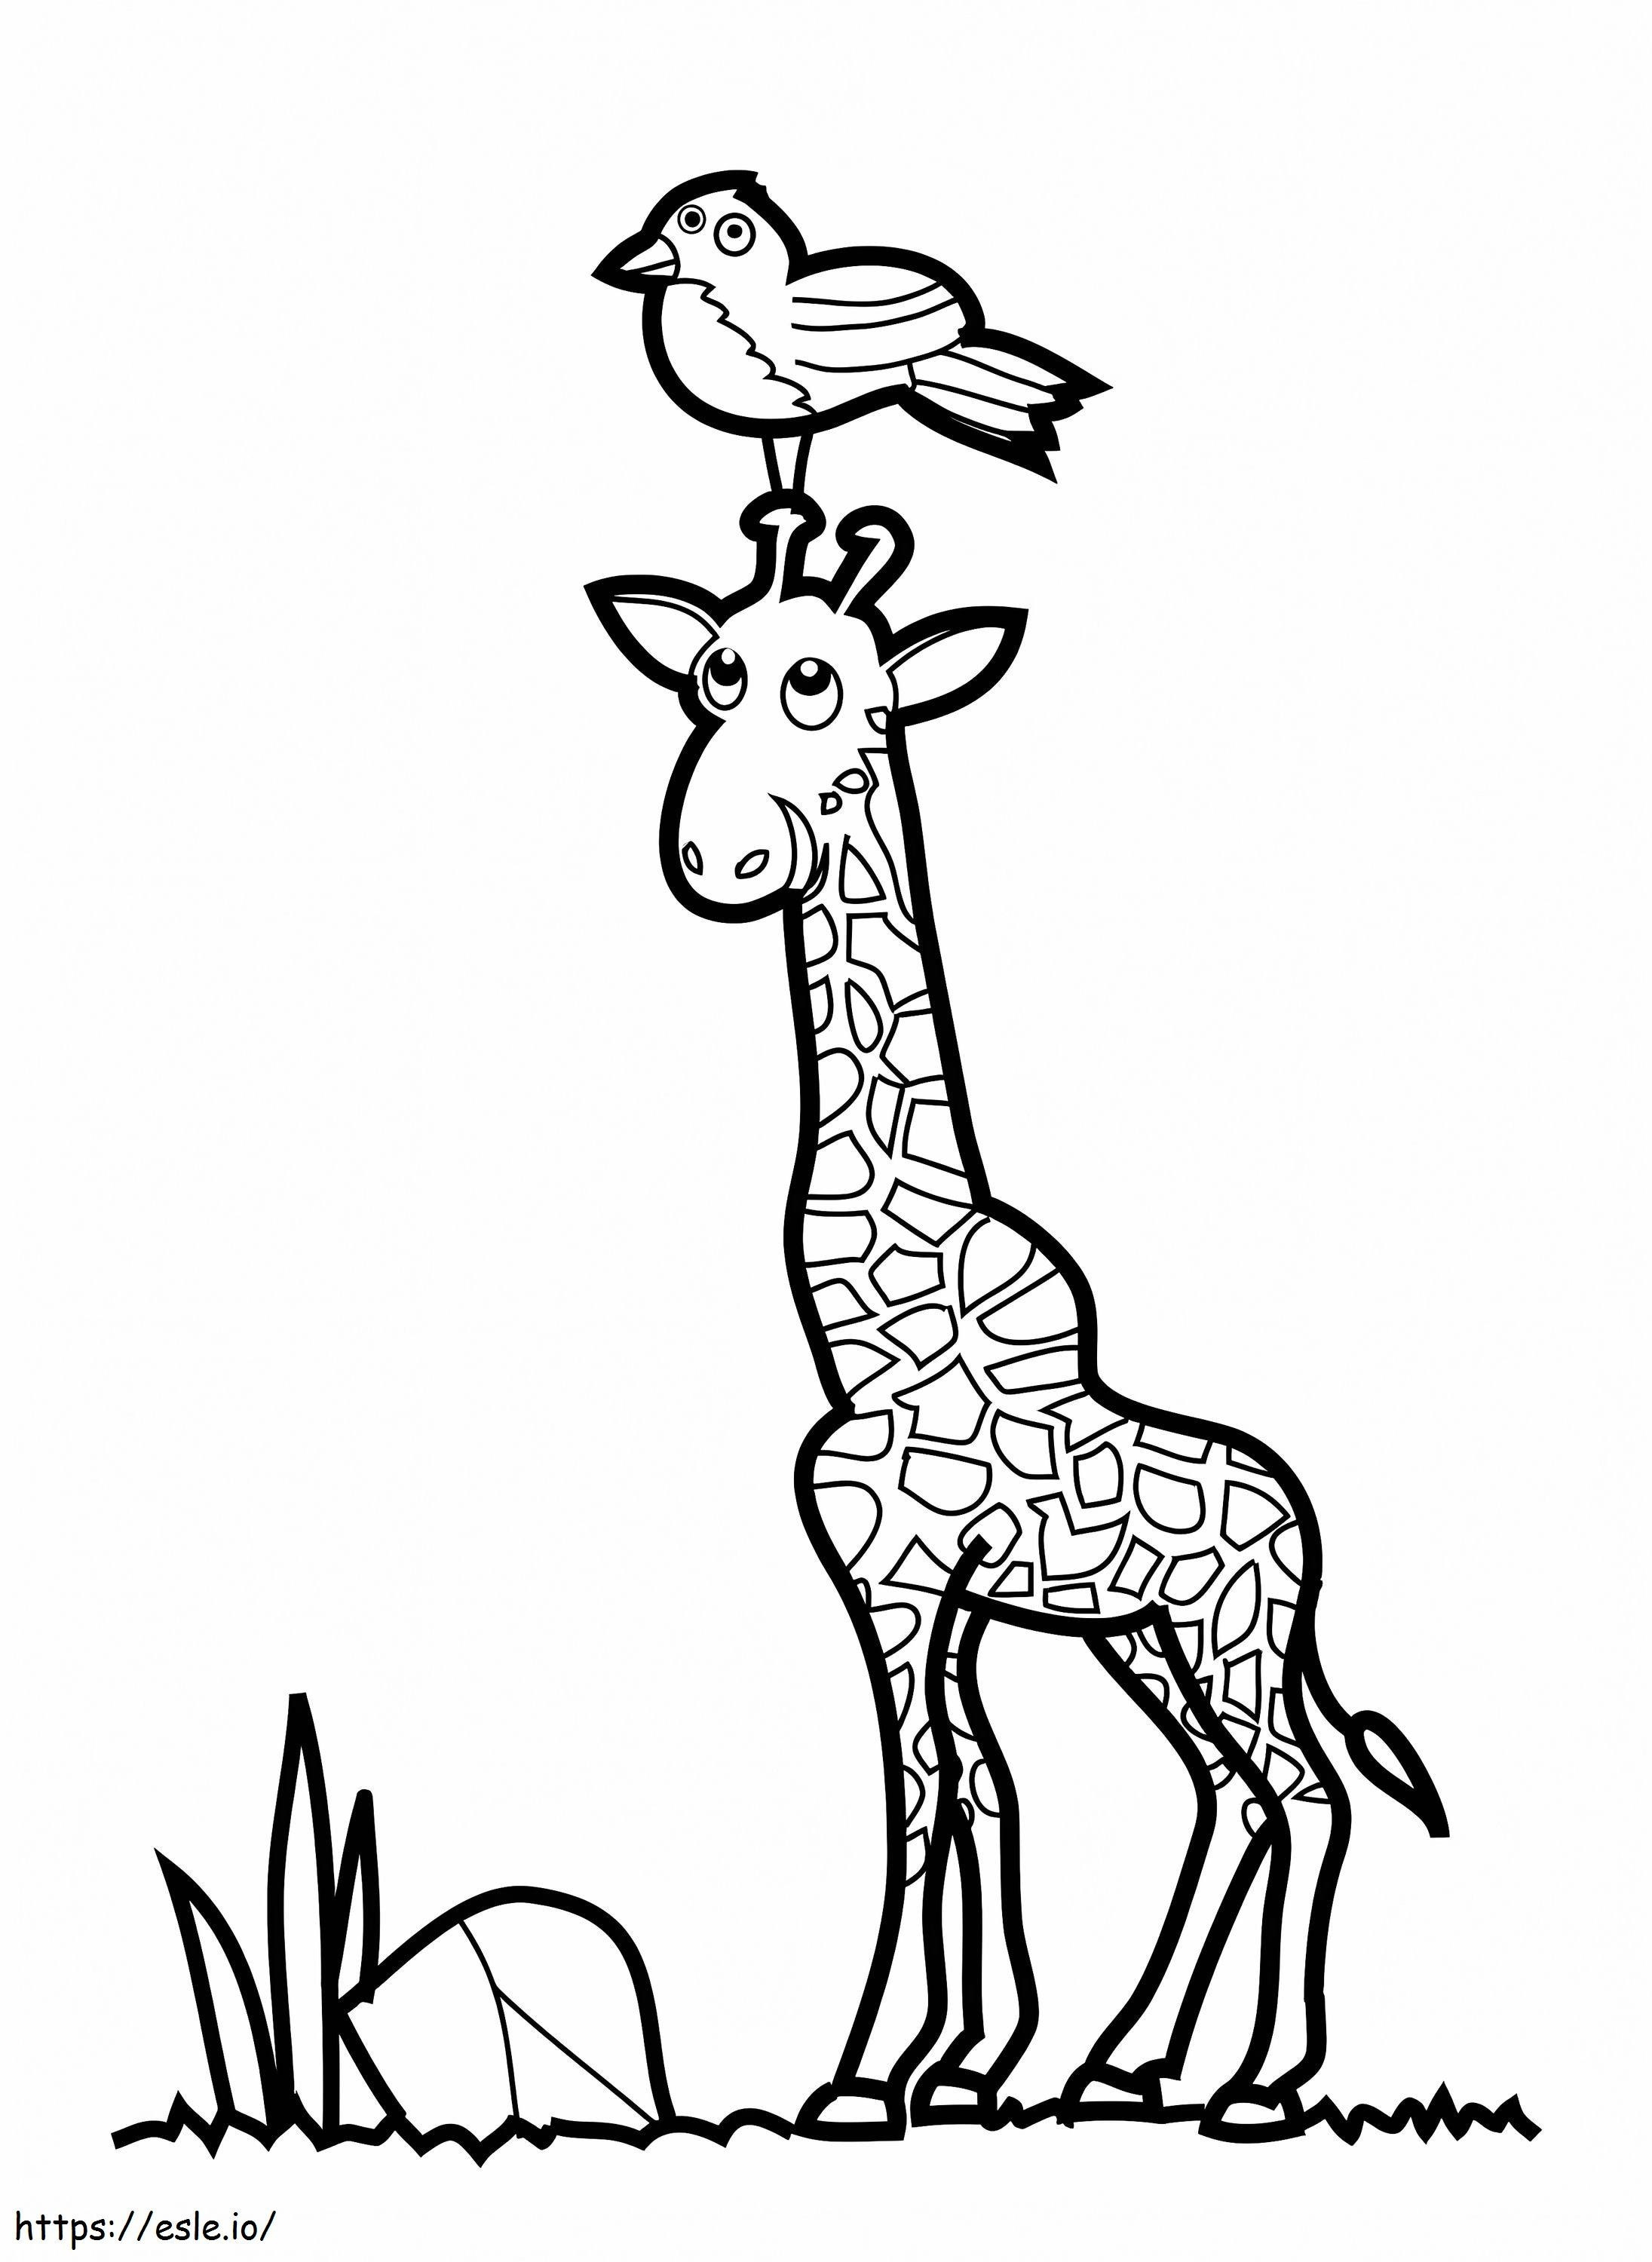 Vogel und Giraffe ausmalbilder